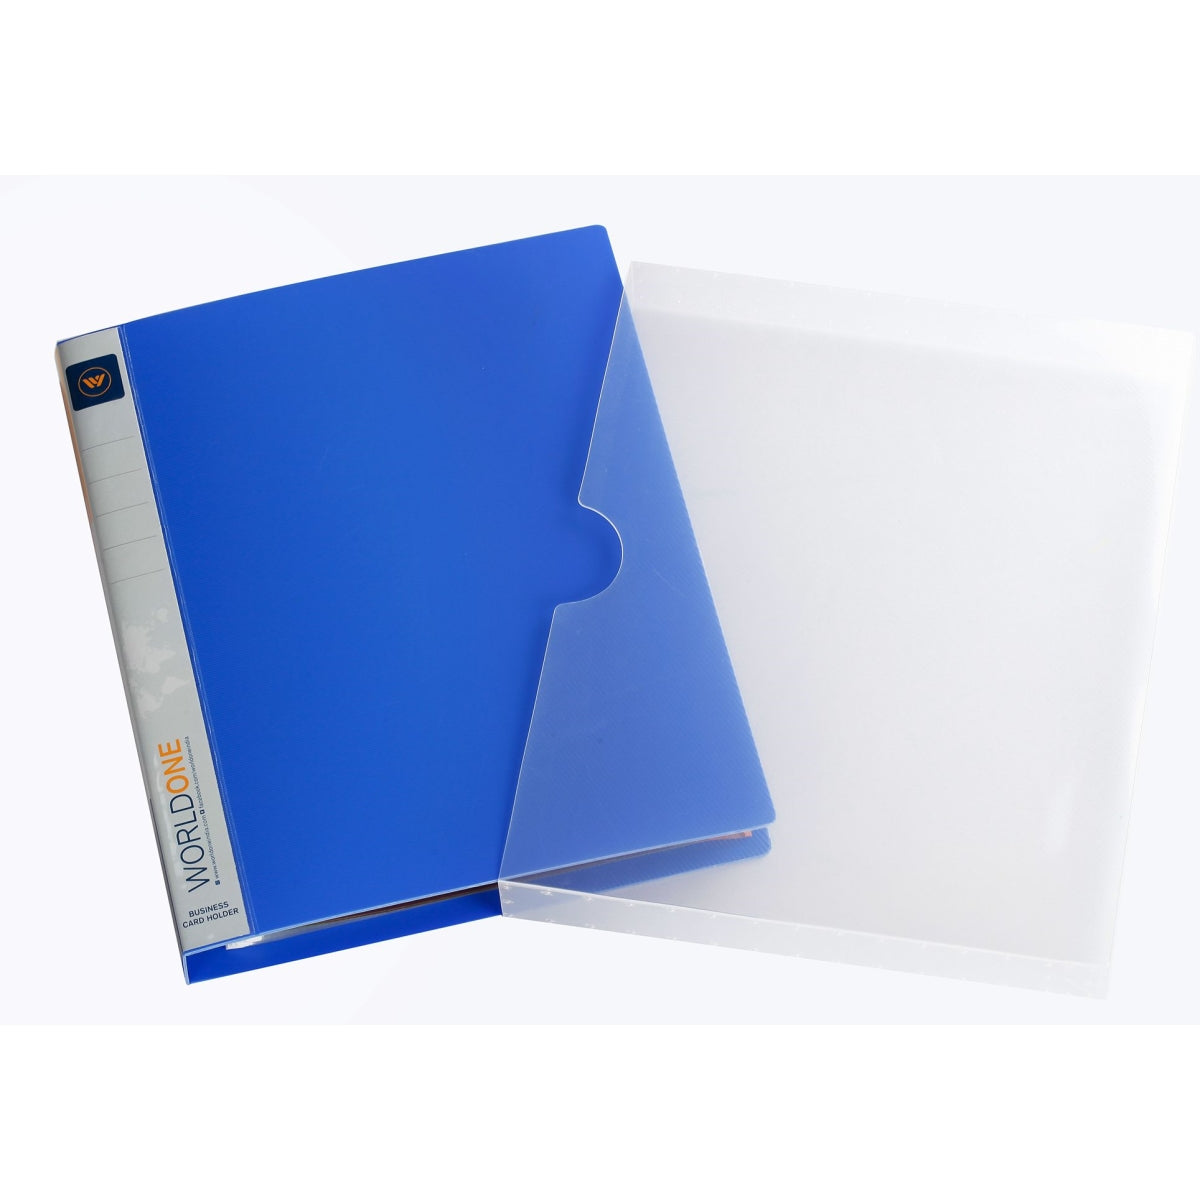 Pineider Business Card Holder - Blue